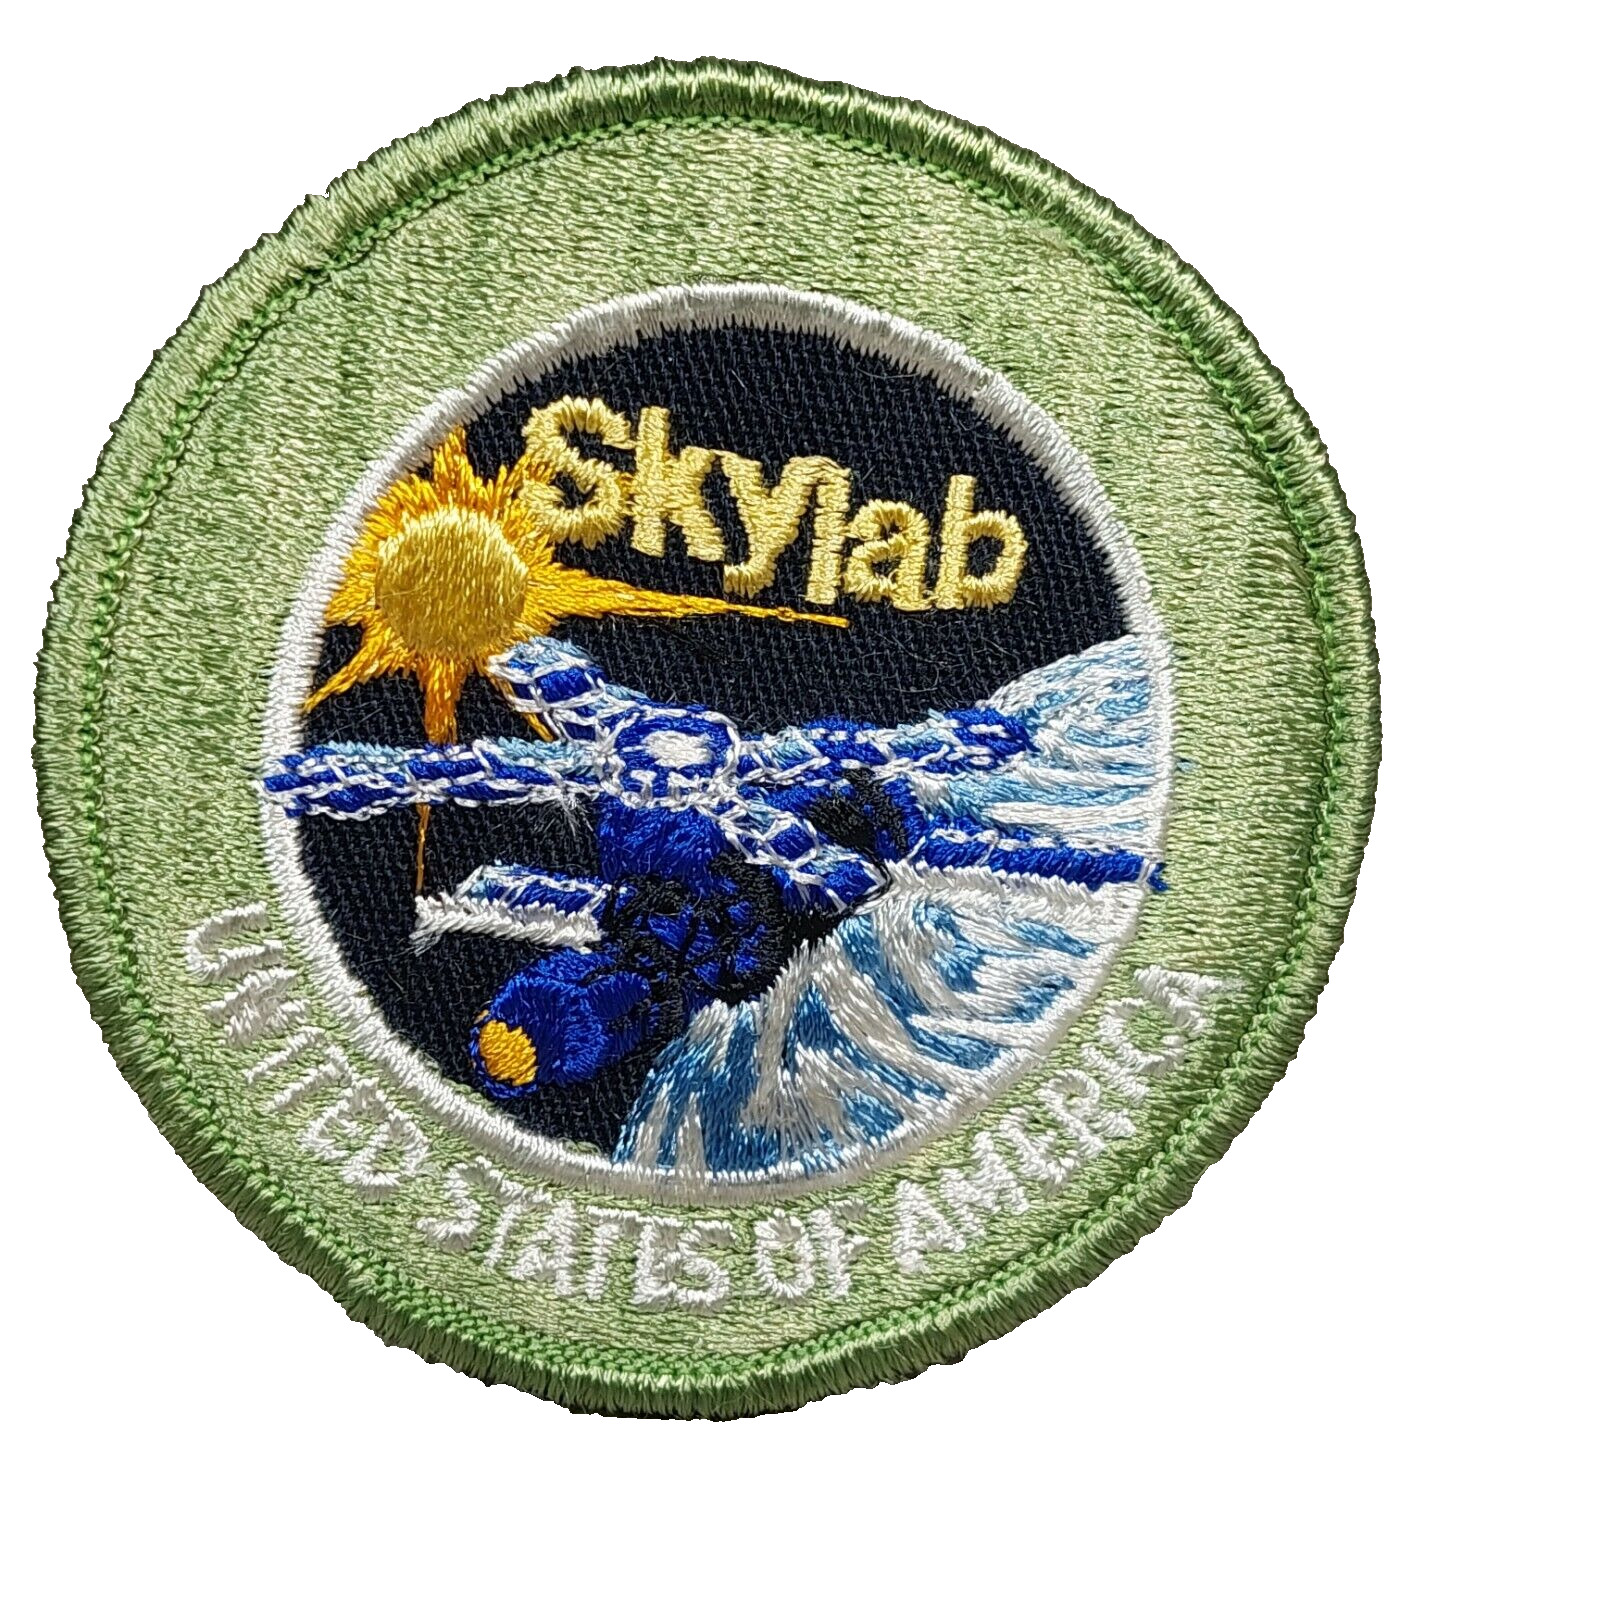 Skylab Project Patch NASA Space Program 3\